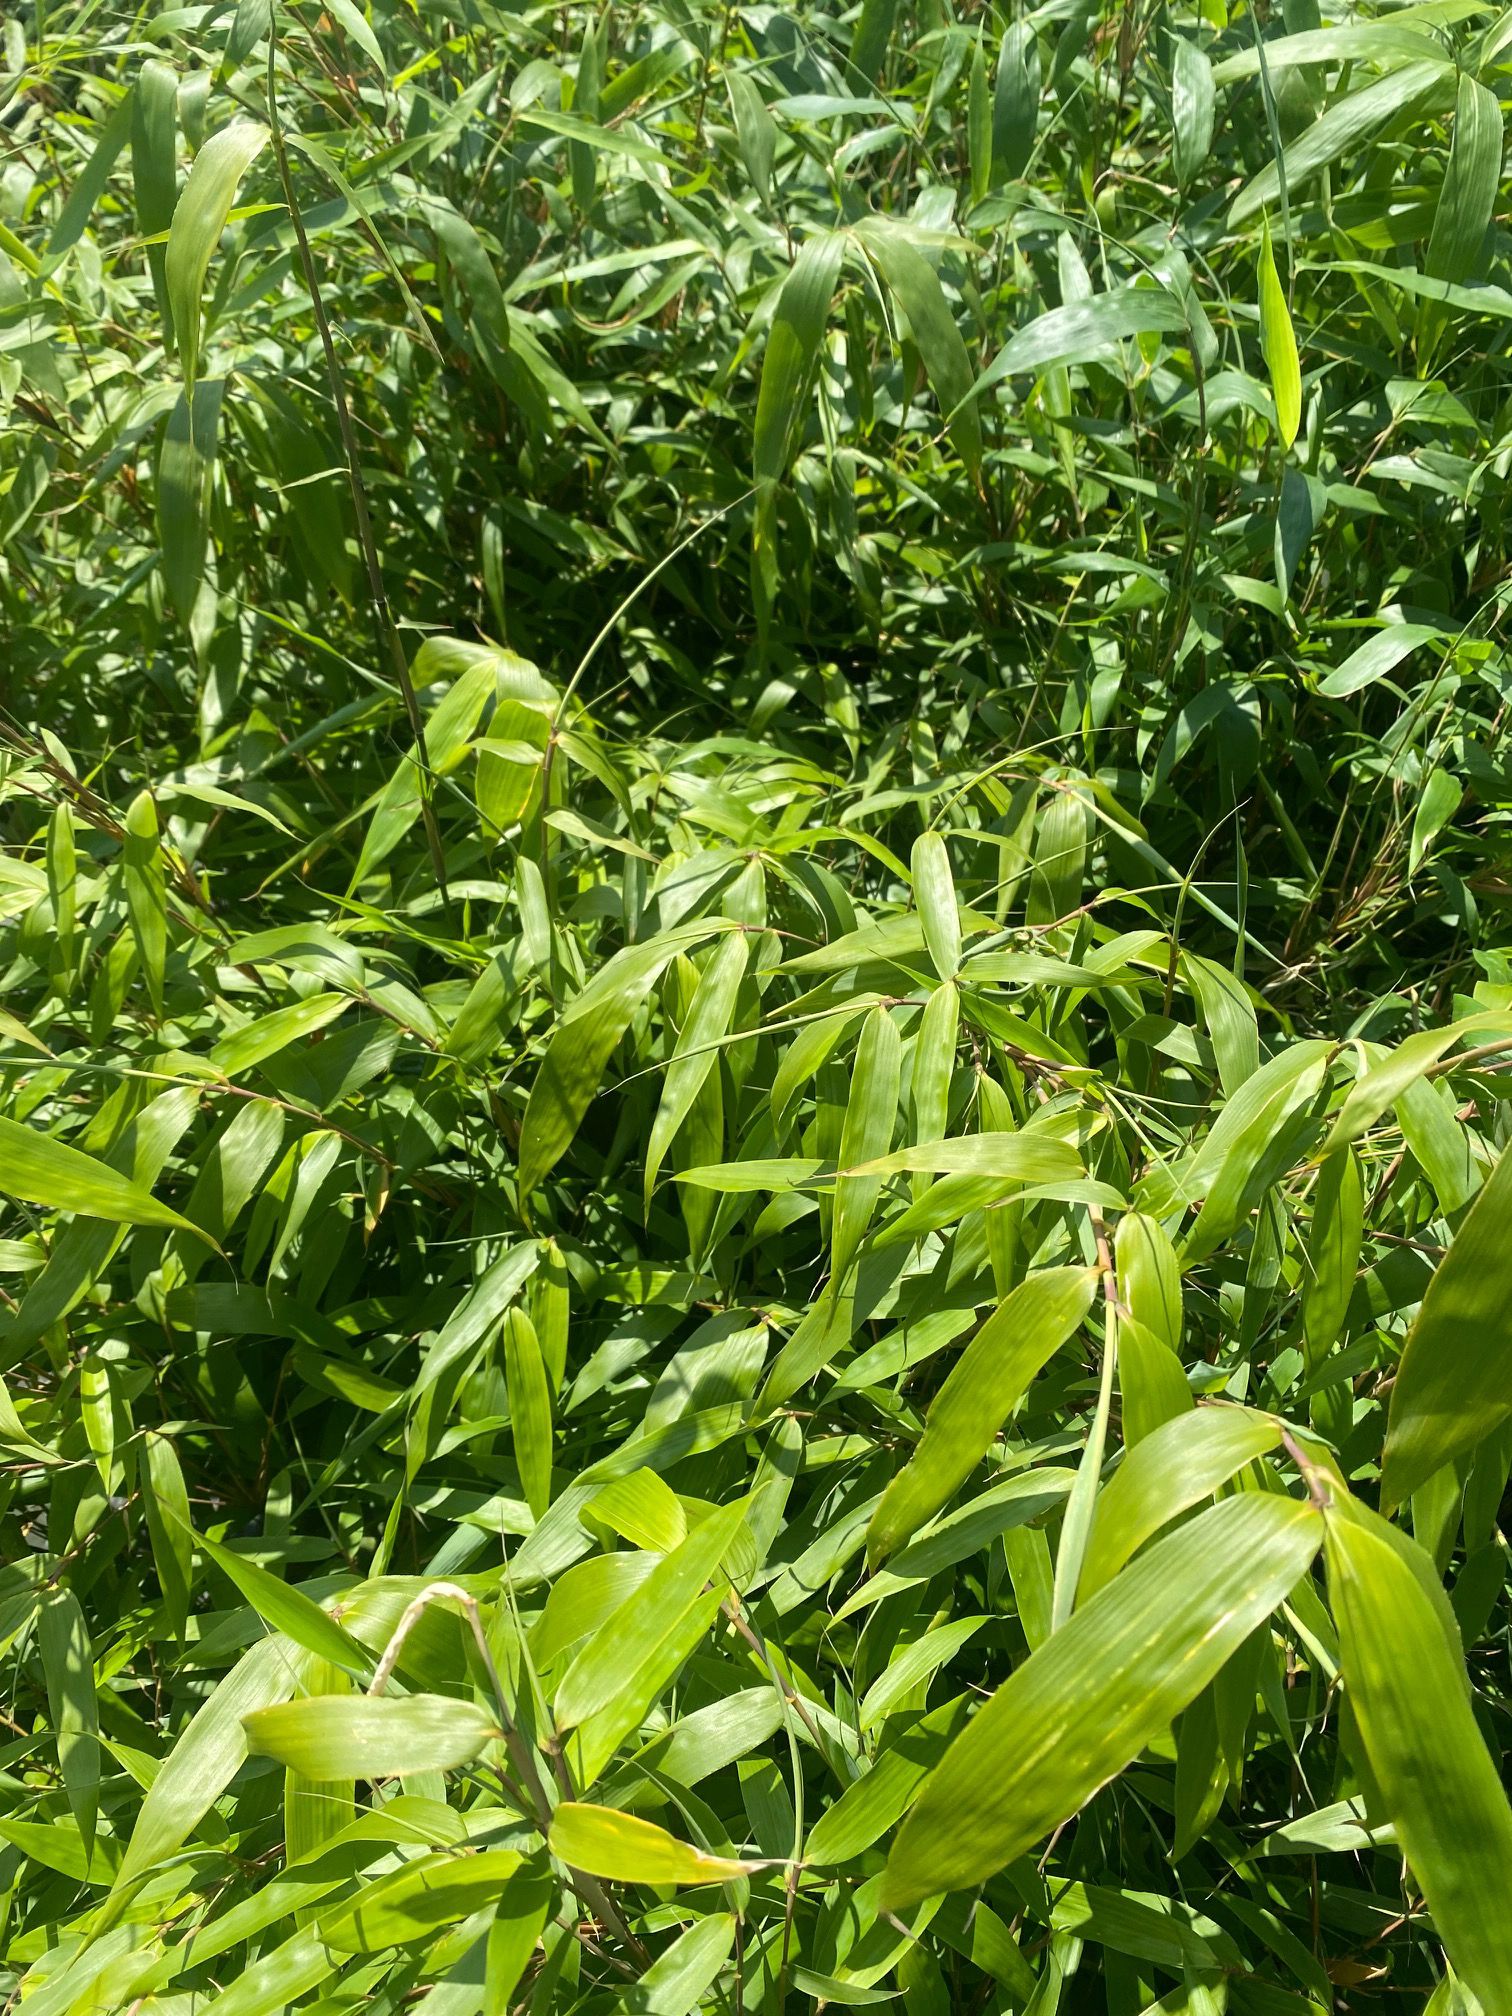 Behandeling Catastrofe Zenuwinzinking Bamboe Fargesia robusta 'Wenchuan' 3 meter woekert niet